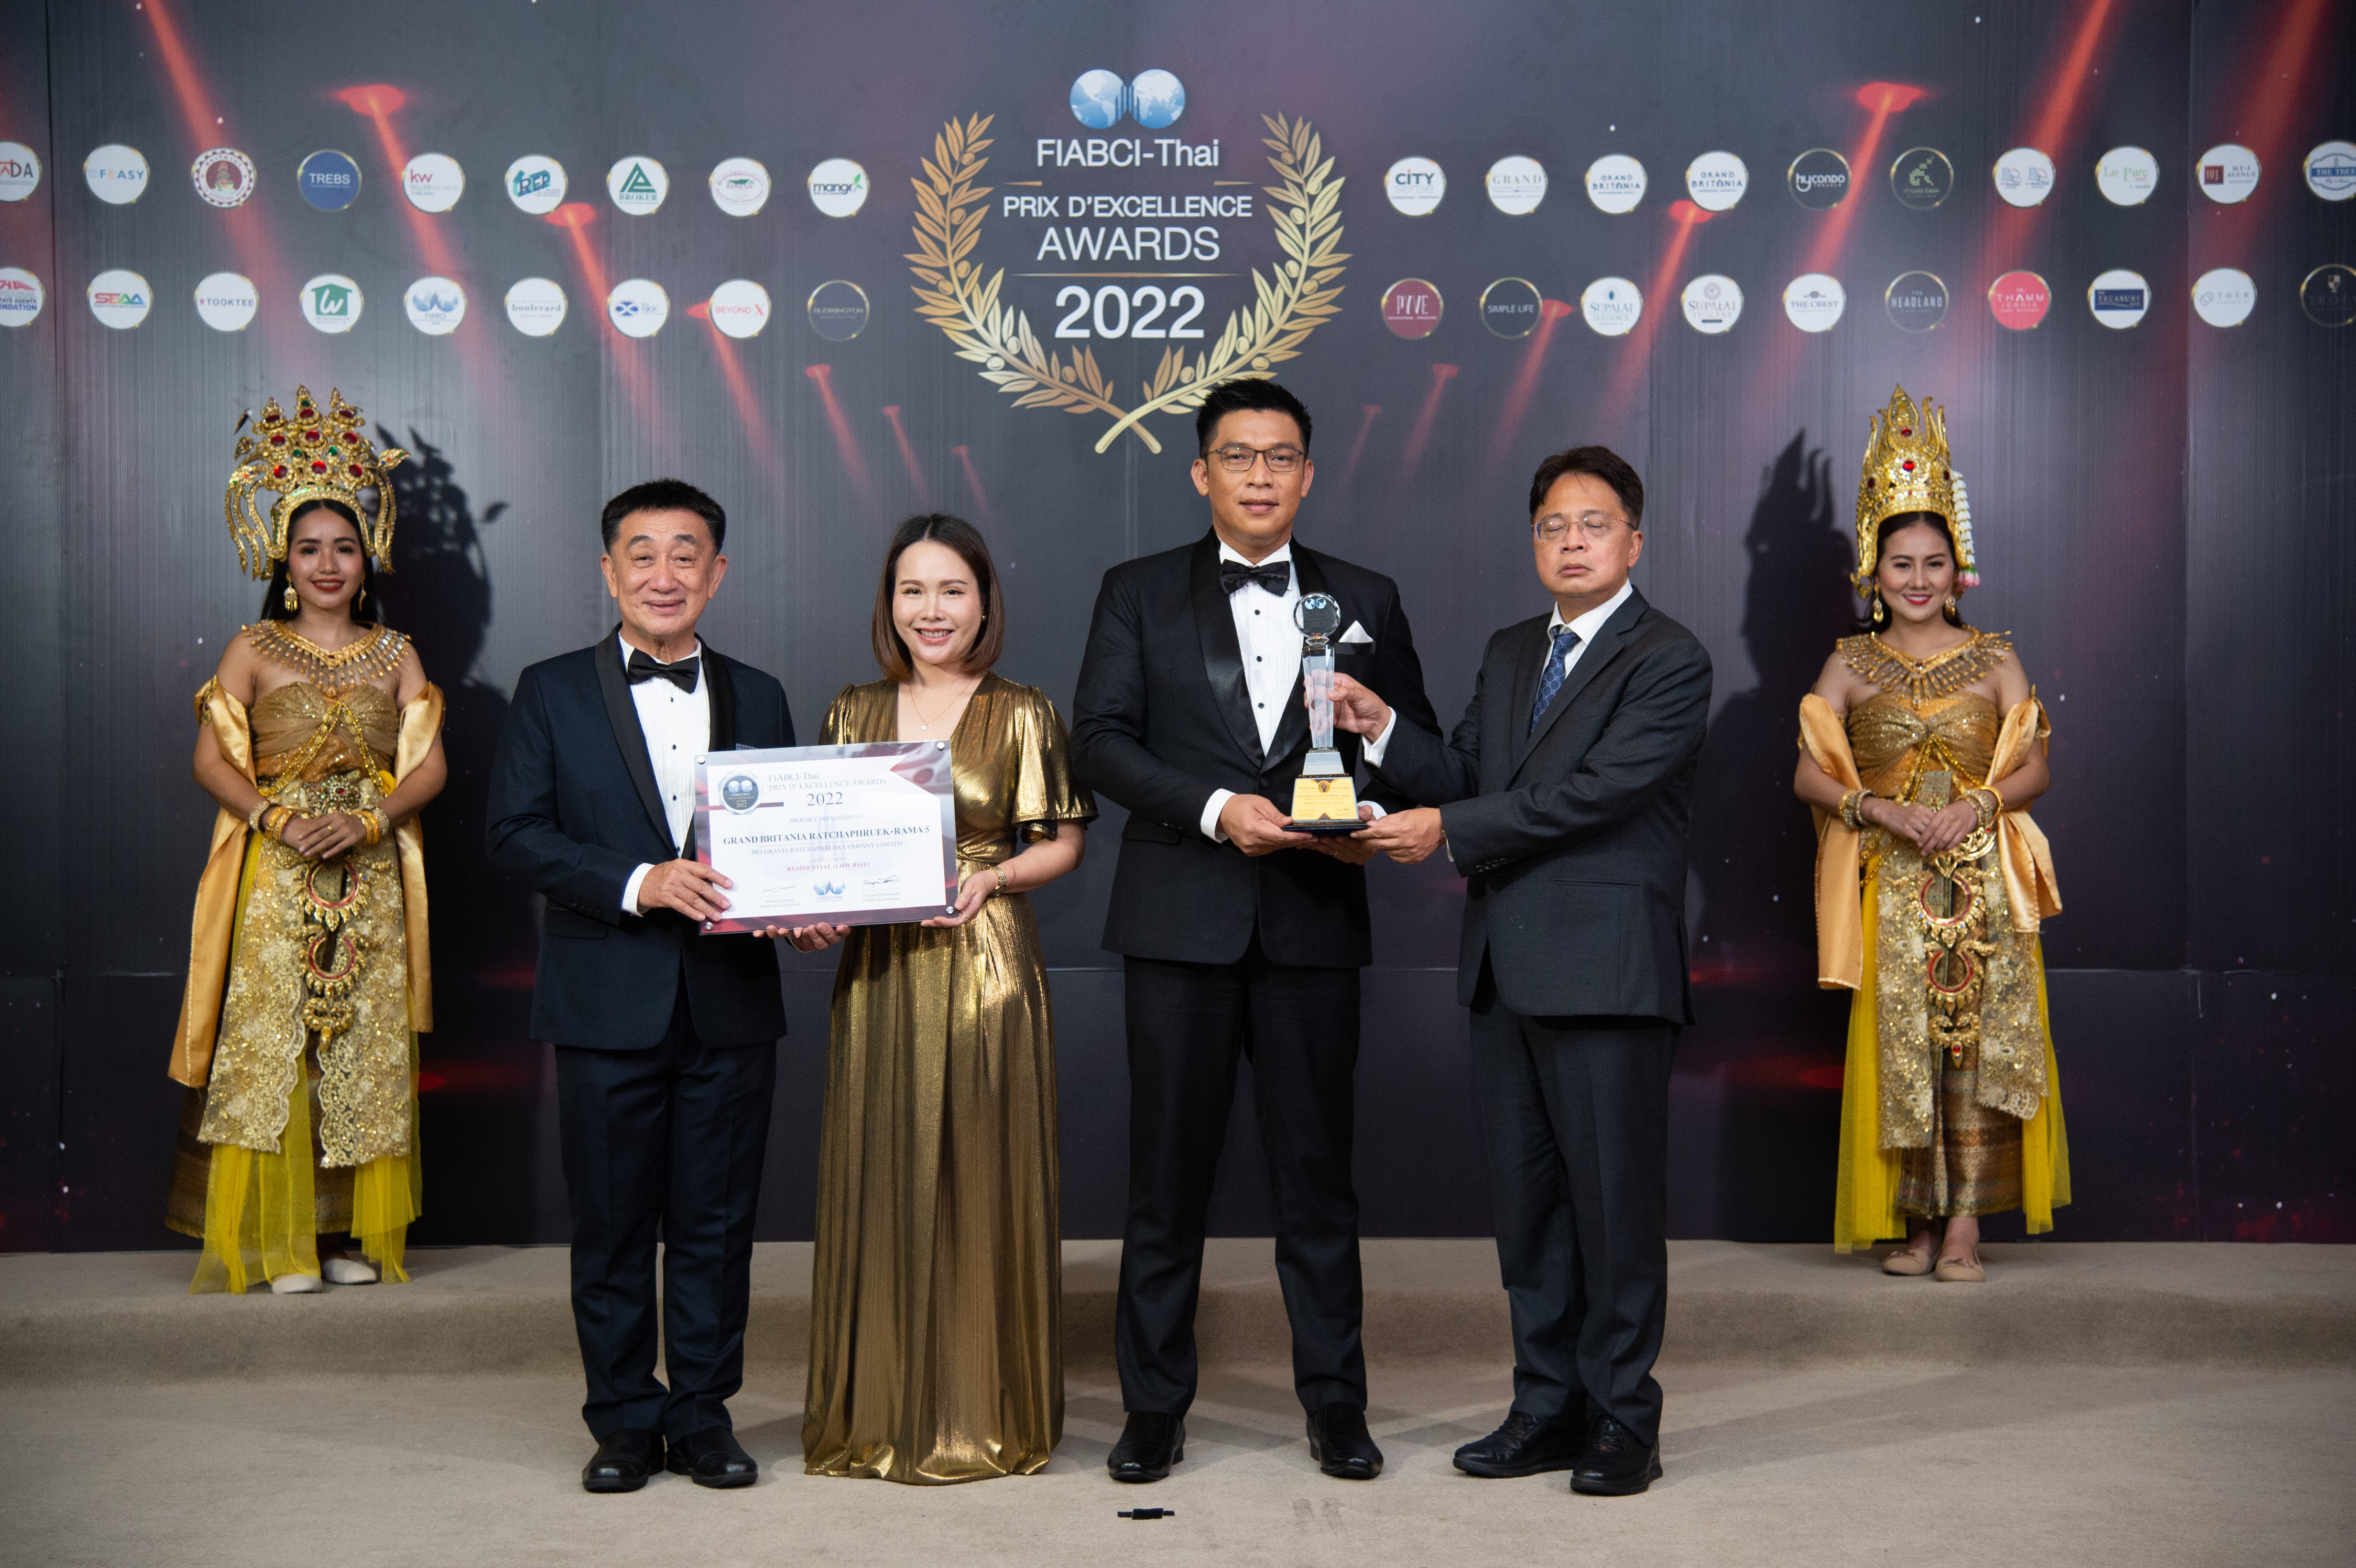 โครงการ แกรนด์ บริทาเนีย ราชพฤกษ์-พระราม 5 รับรางวัล FIABCI-Thai Award 2022